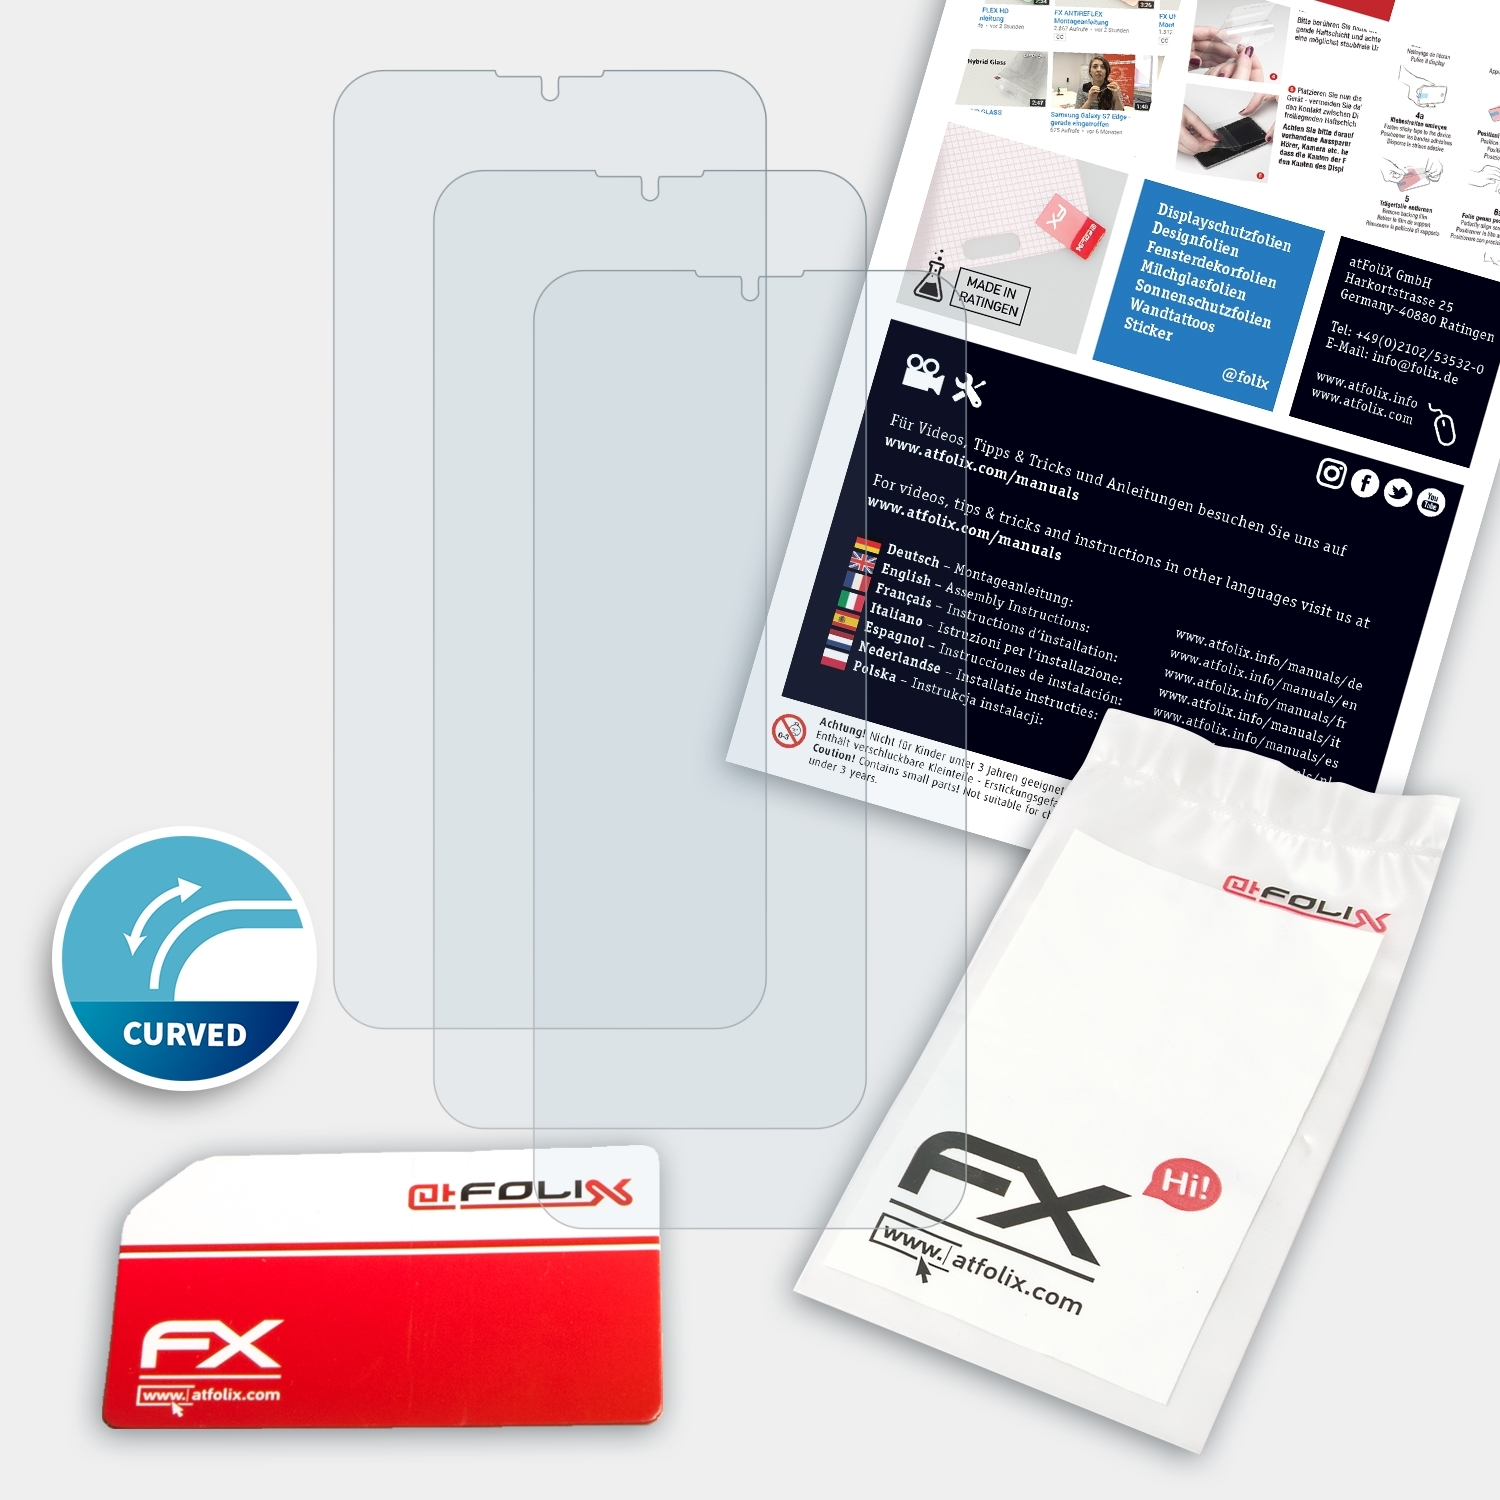 FX-ActiFleX Displayschutz(für 3x ATFOLIX M10) Meizu